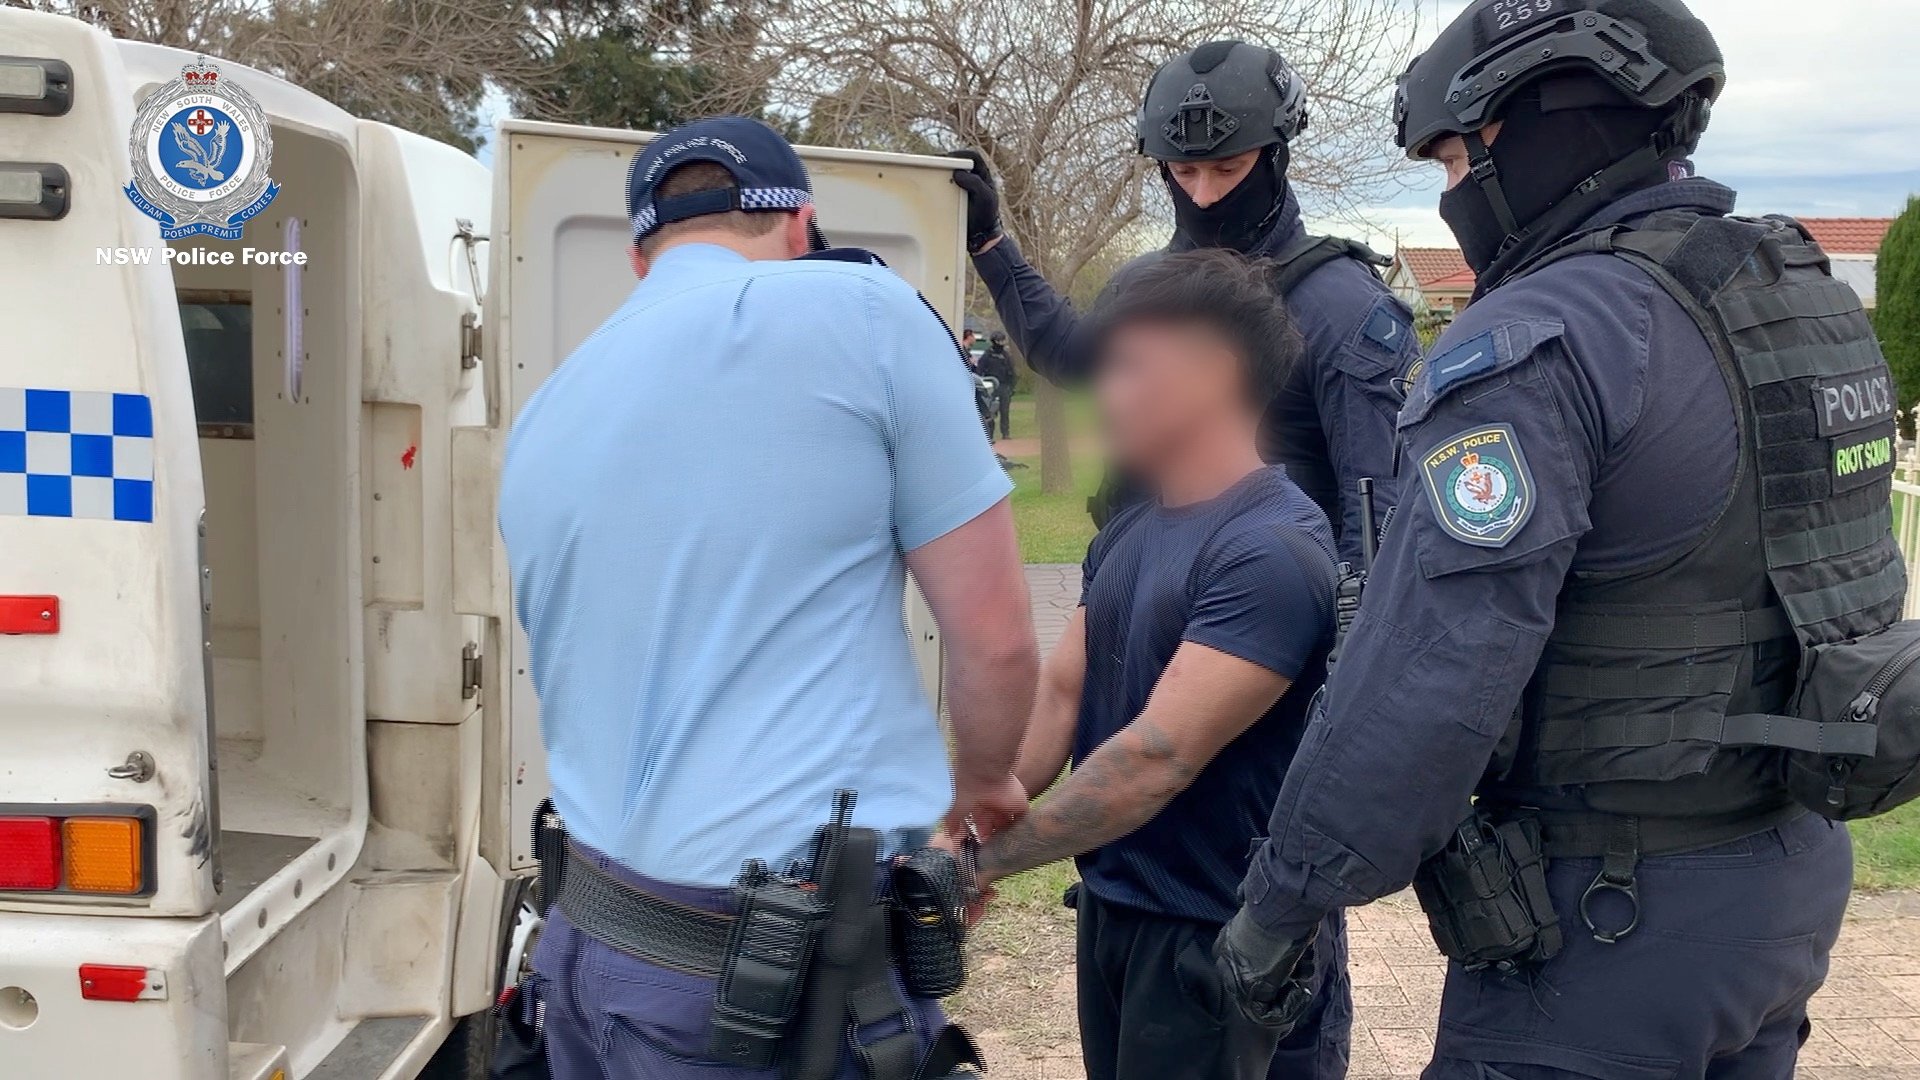 Patru persoane au fost arestate după ce poliţia australiană a găsit peste 190 de kilograme de droguri ascunse într-un Bentley vintage, expediat din Canada în Australia/ Foto: Facebook - NSW Police Force